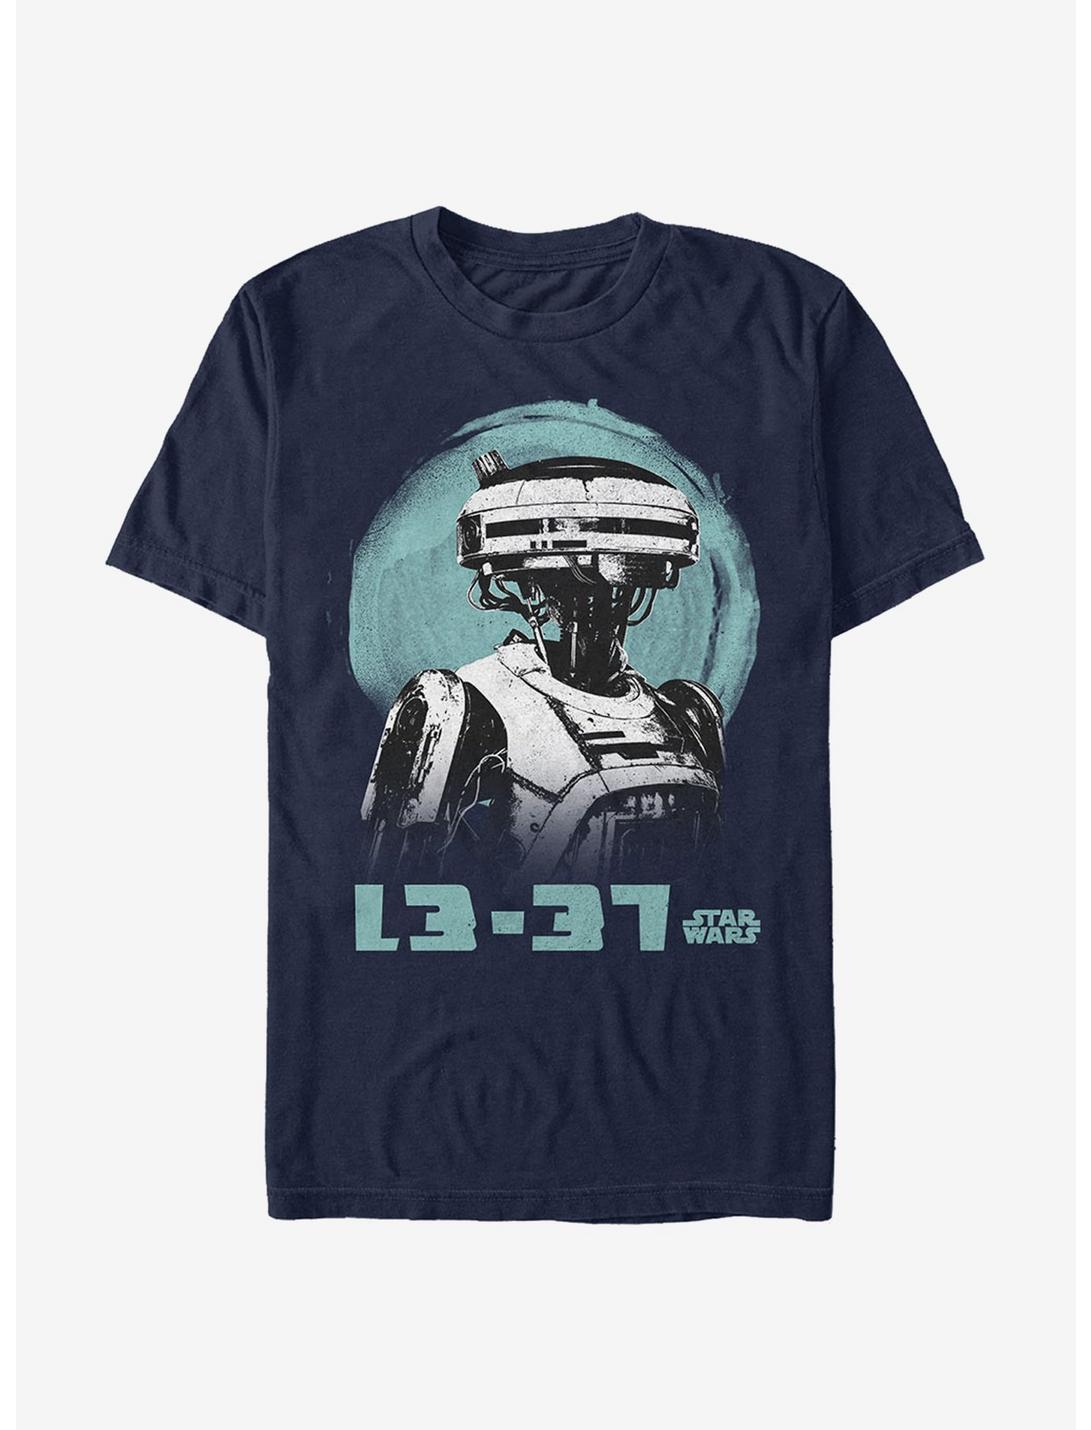 Star Wars L3-37 Watercolor Print T-Shirt, NAVY, hi-res